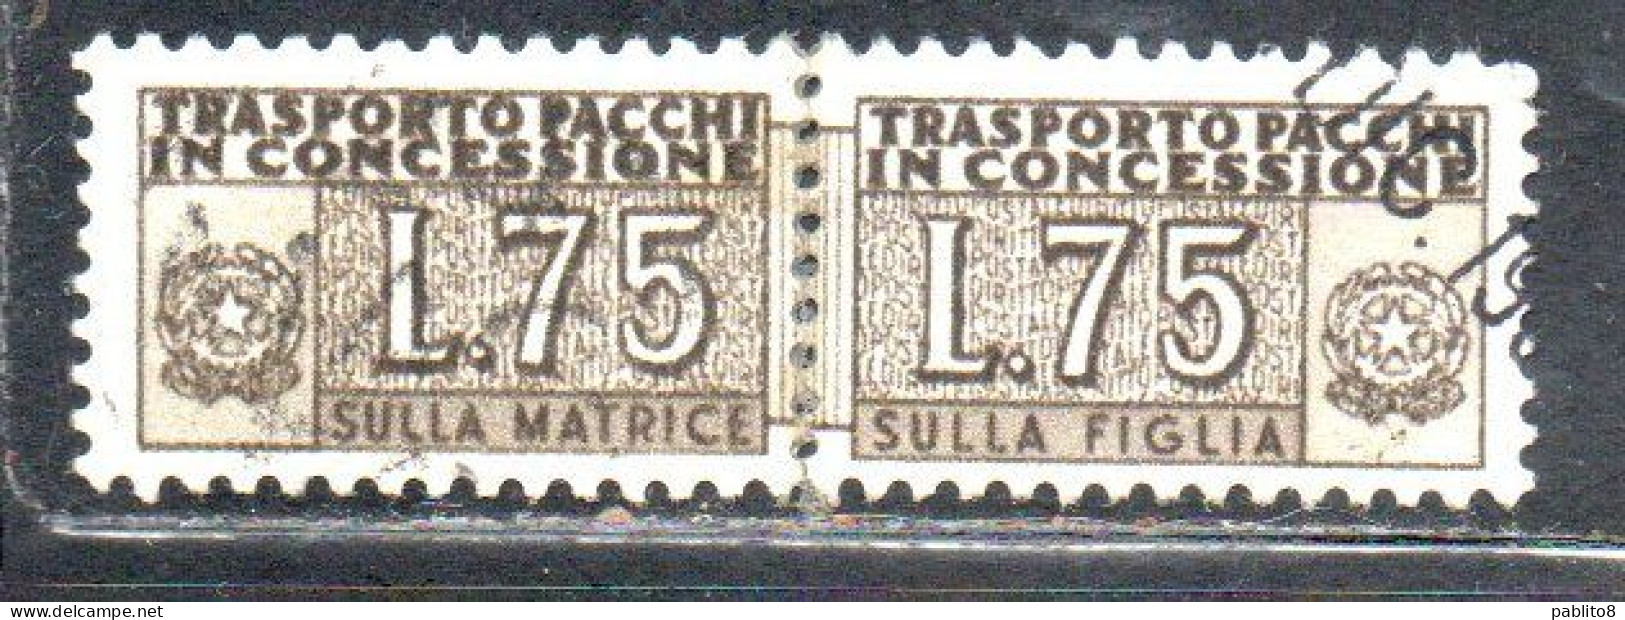 ITALIA REPUBBLICA ITALY REPUBLIC 1955 1981 PACCHI IN CONCESSIONE PARCEL POST STELLE STARS LIRE 75 USATO USED OBLIT - Pacchi In Concessione